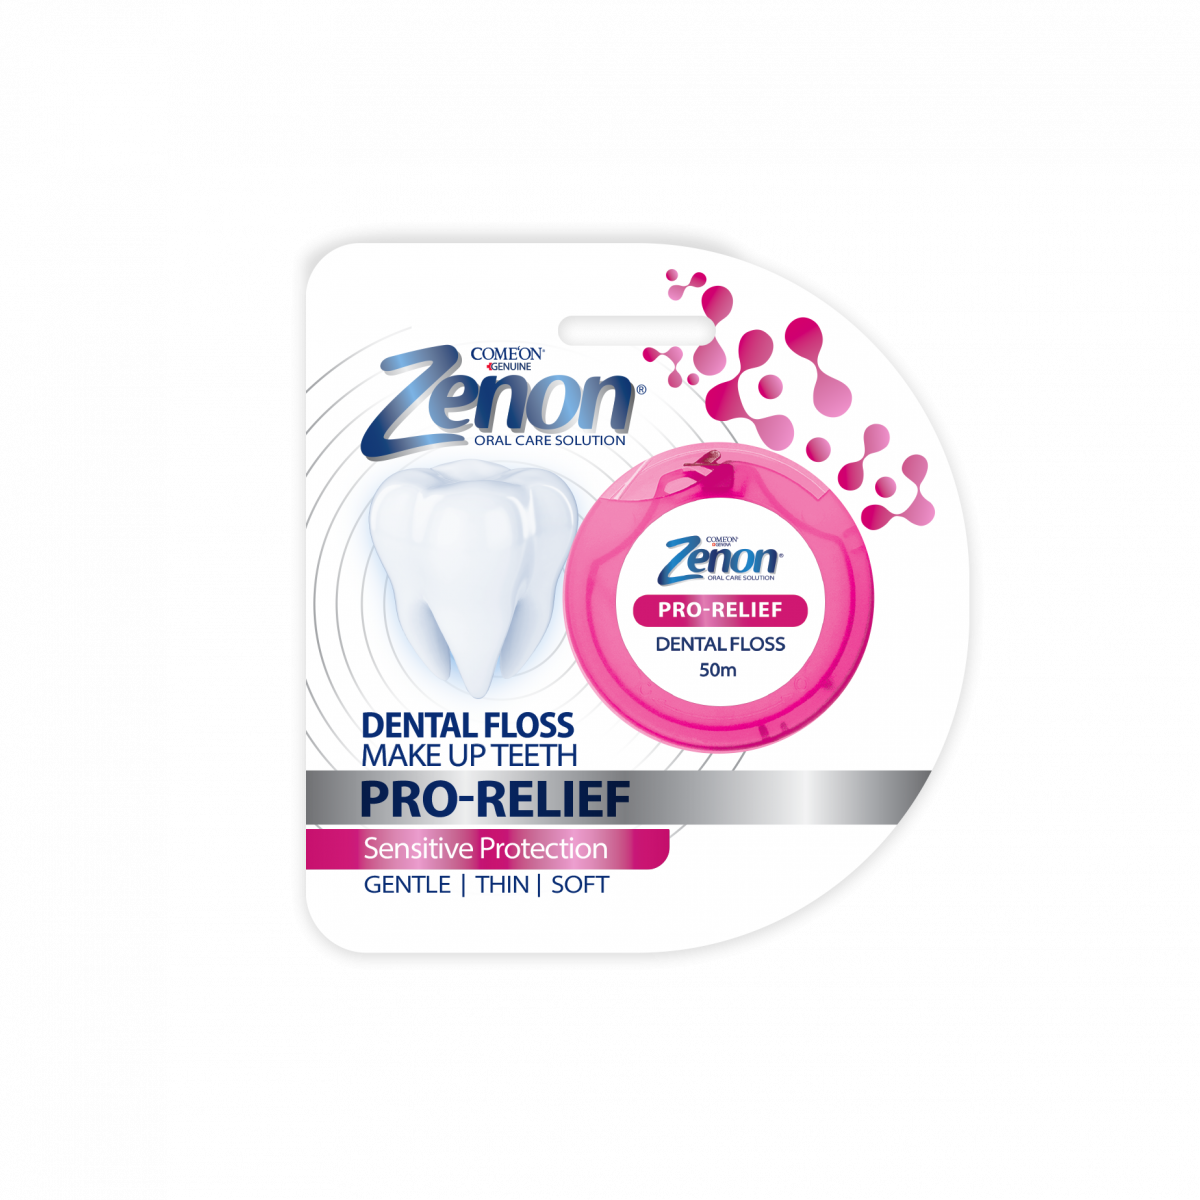 Zenon Pro Relife Dental Floss